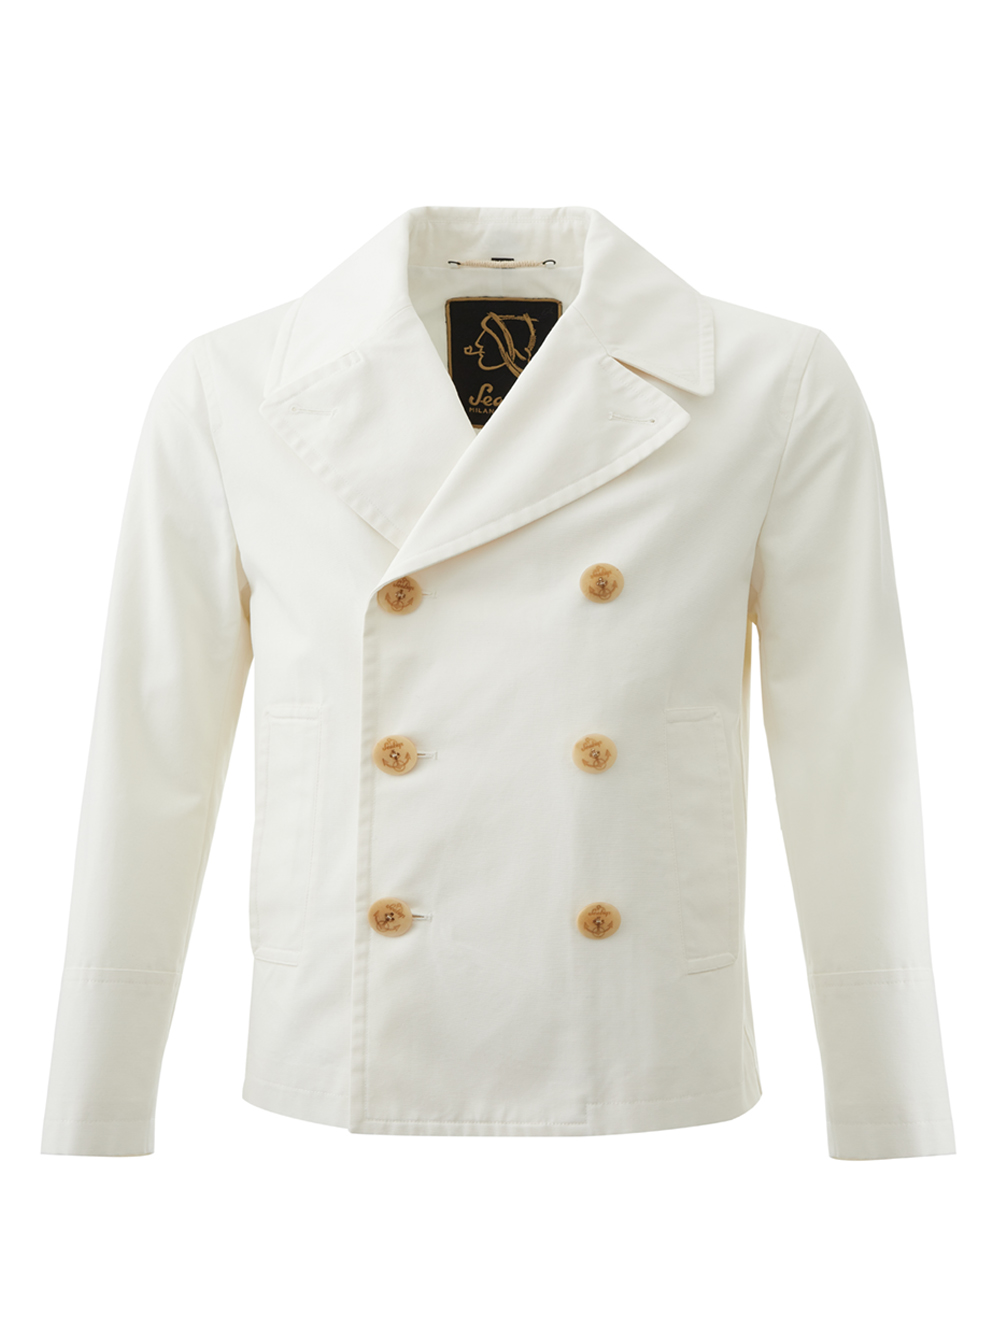 White Marine Style Double Breast Jacket 23MAR406_50